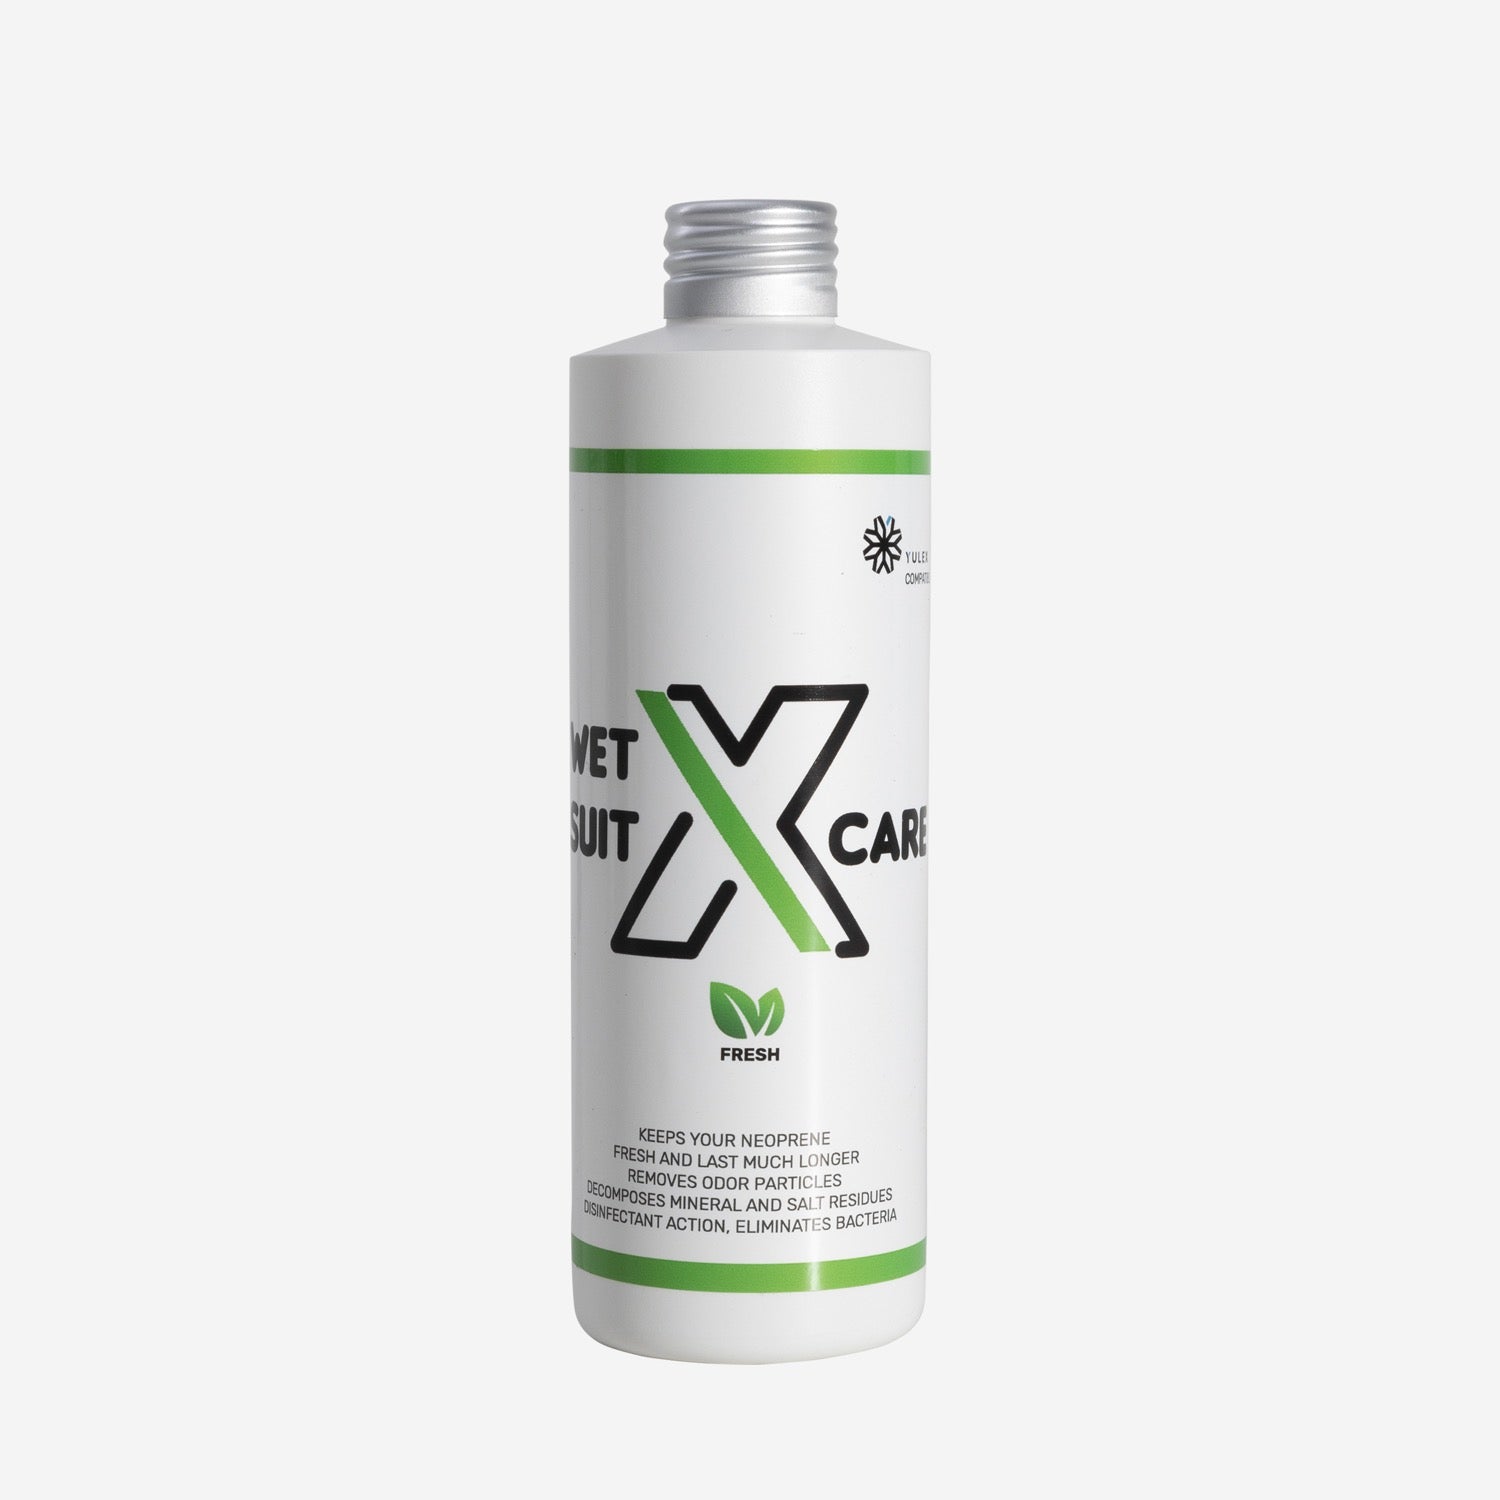 X-Care - Shampoing Neoprene - 500ml - Parfum Fresh